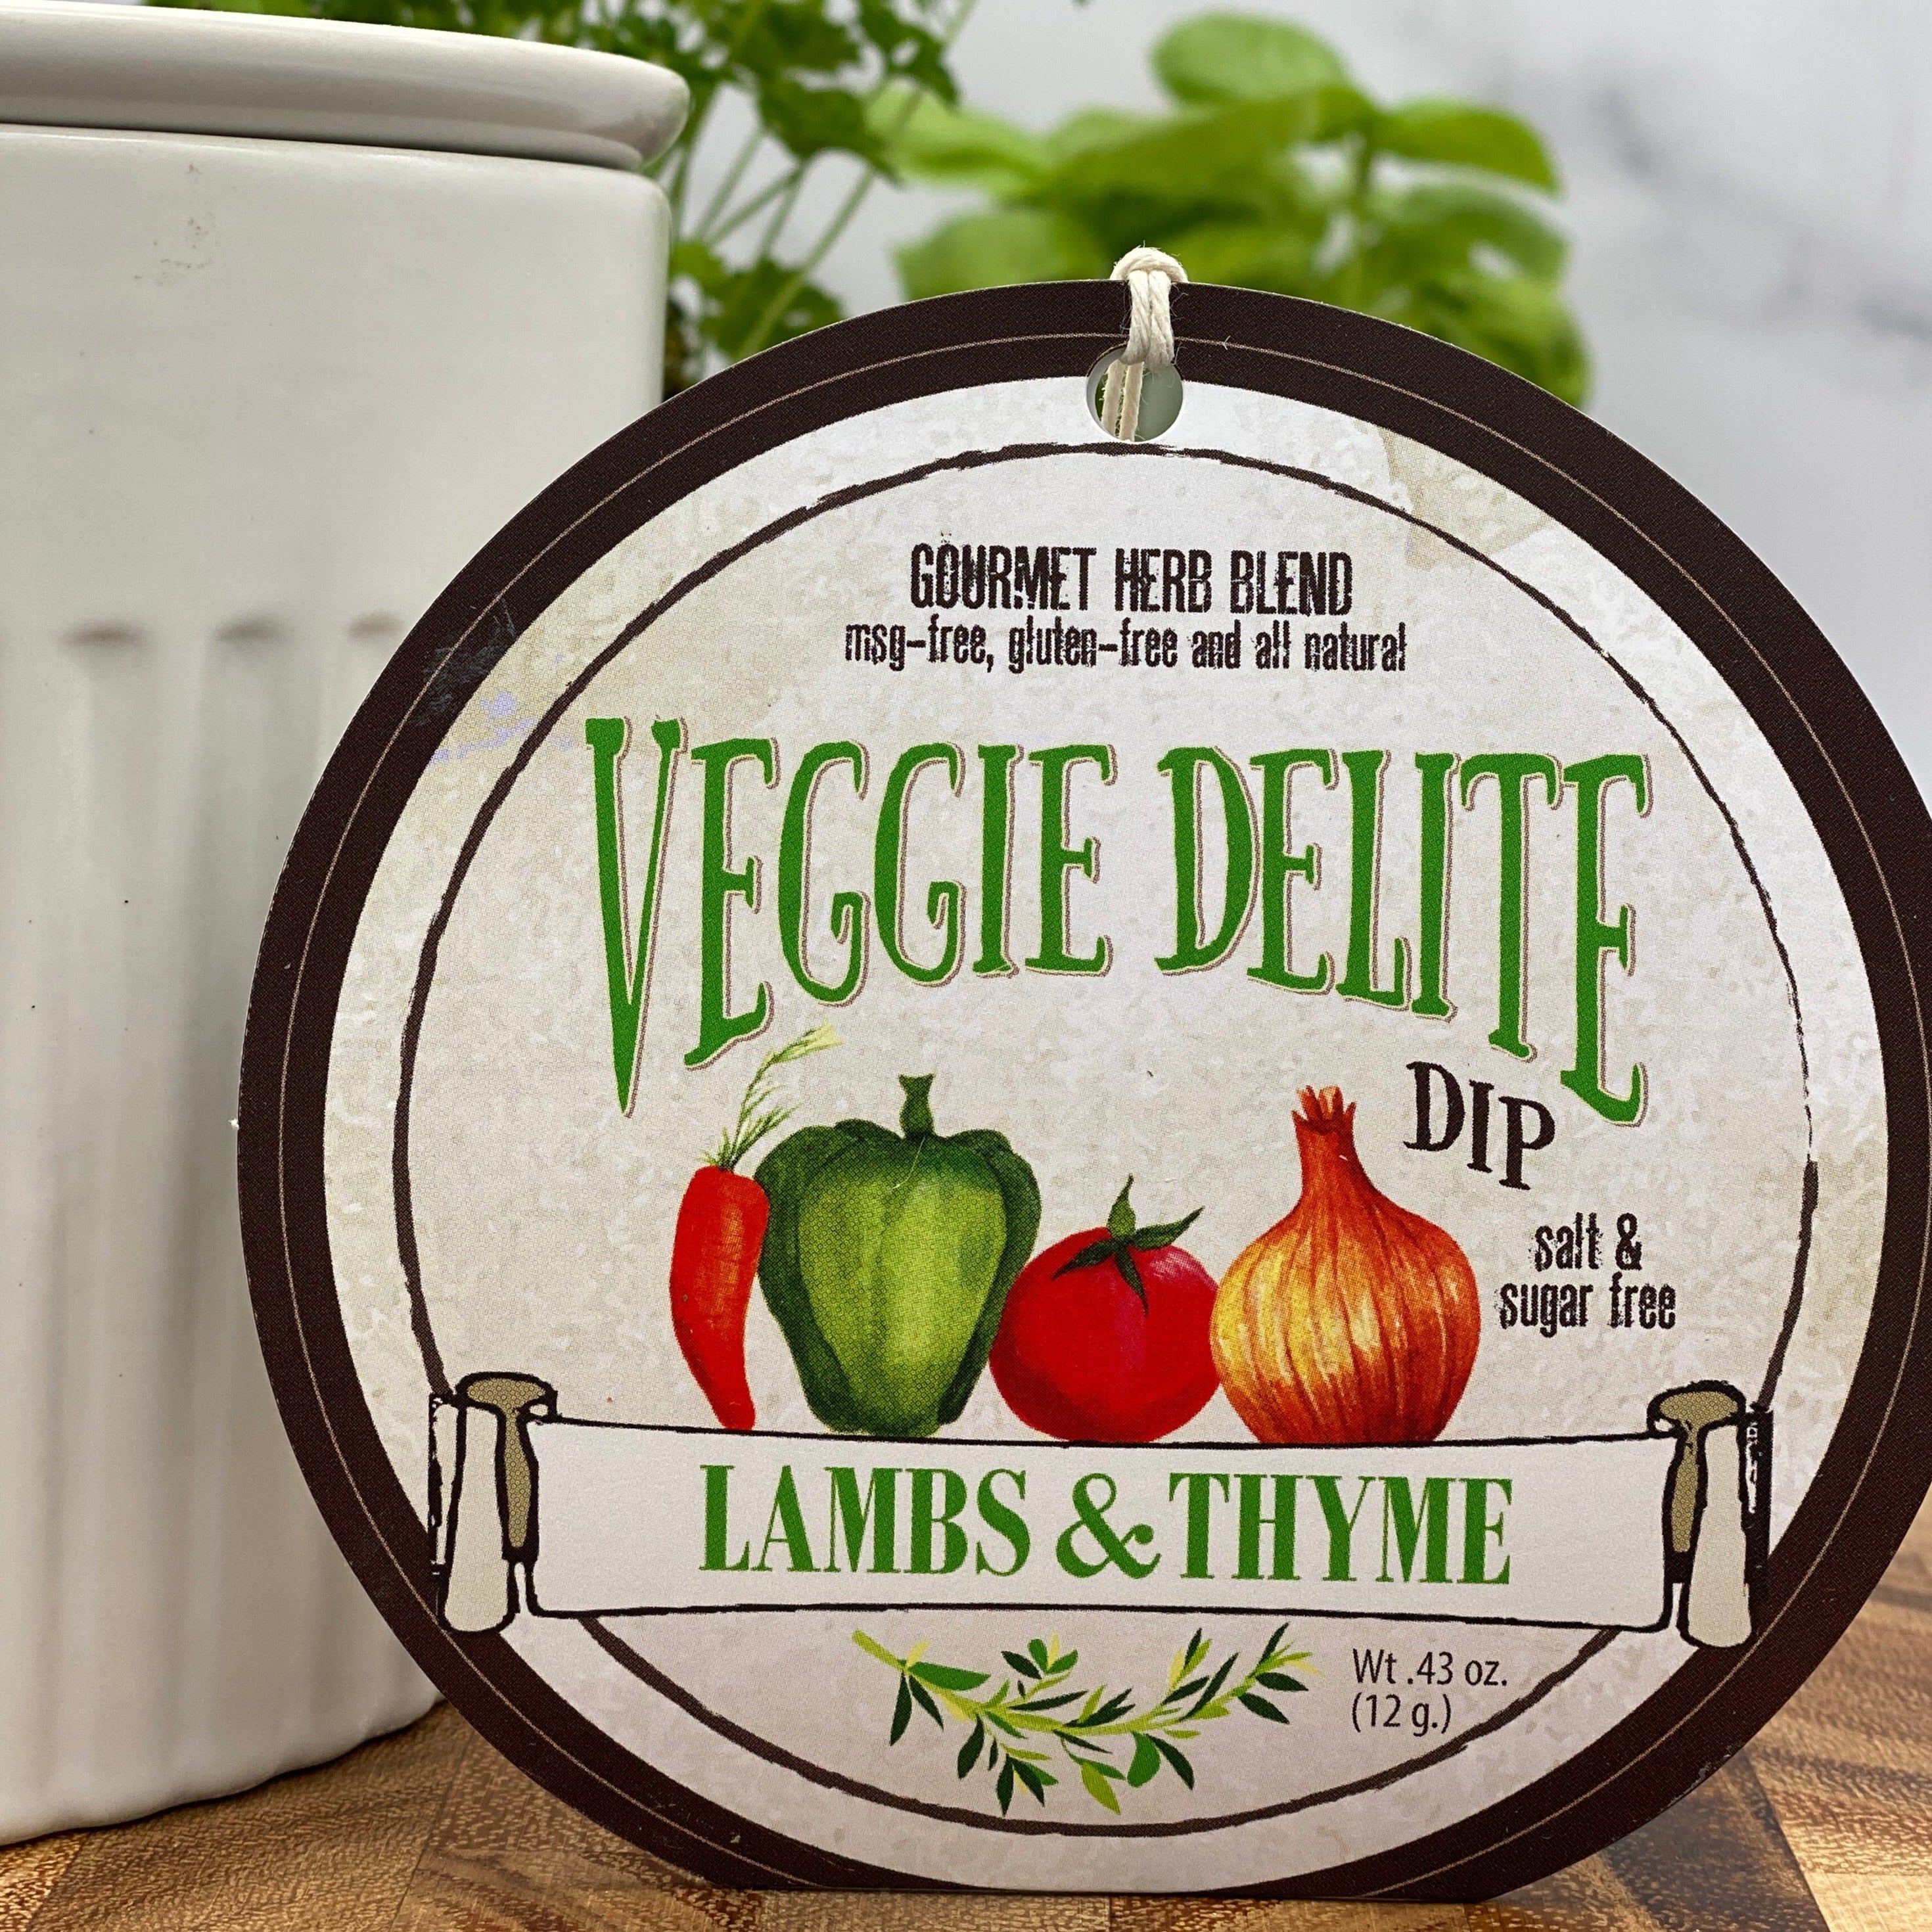 Lambs & Thyme Herb Dips Veggie Delite